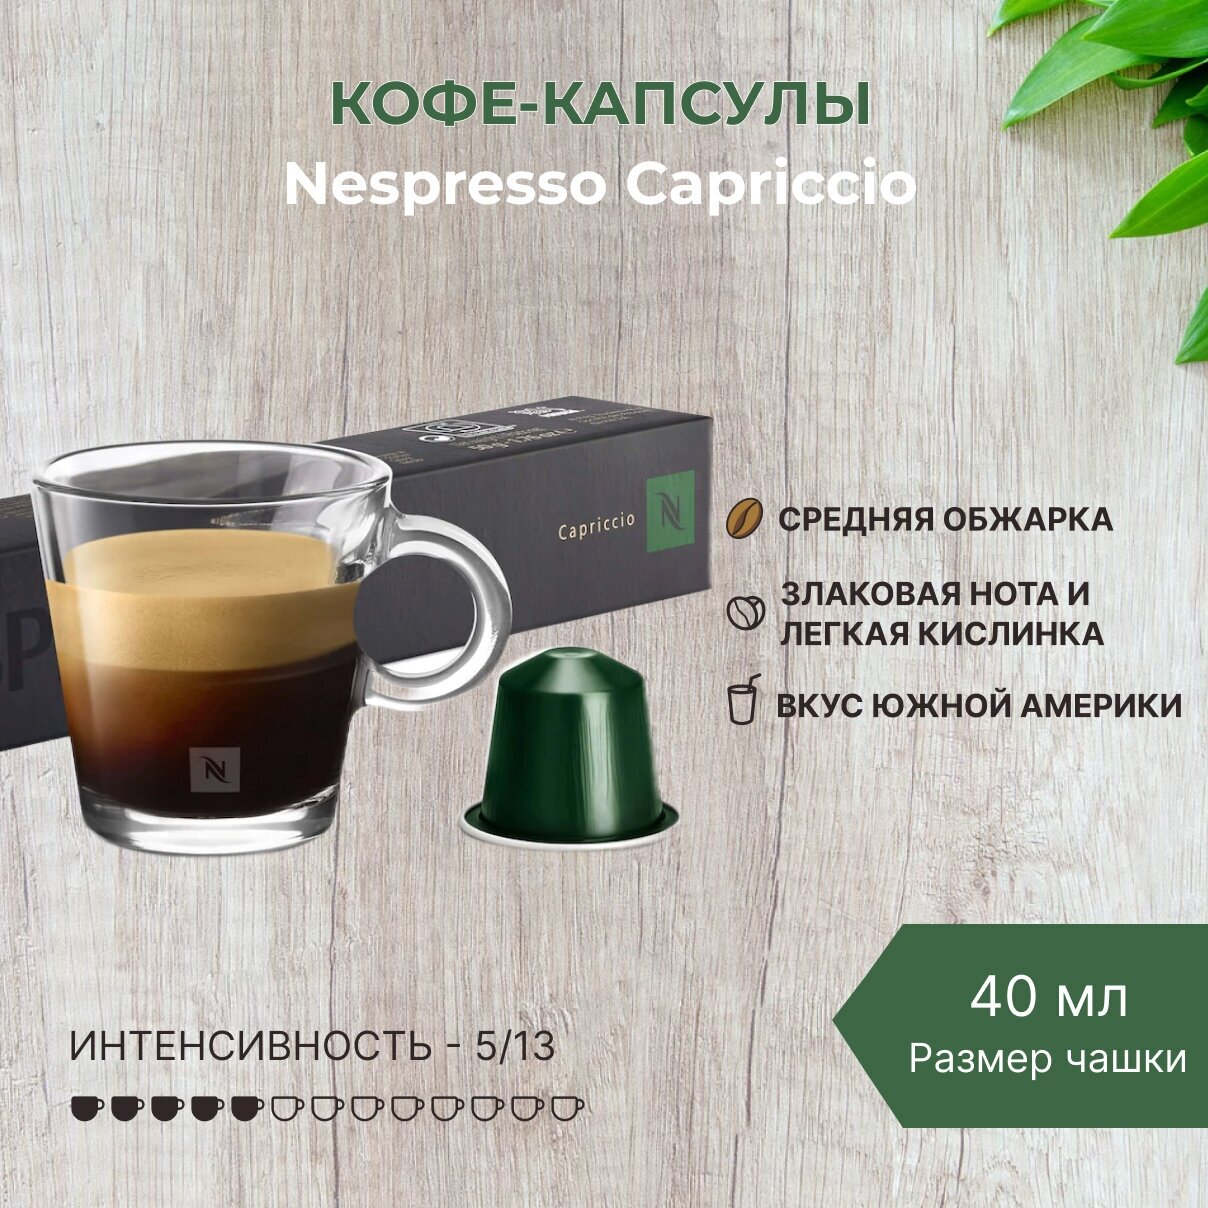 Кофе в капсулах Nespresso Capriccio 40 мл. 5/13 набор капсул Неспрессо для кофемашины Original 10 шт